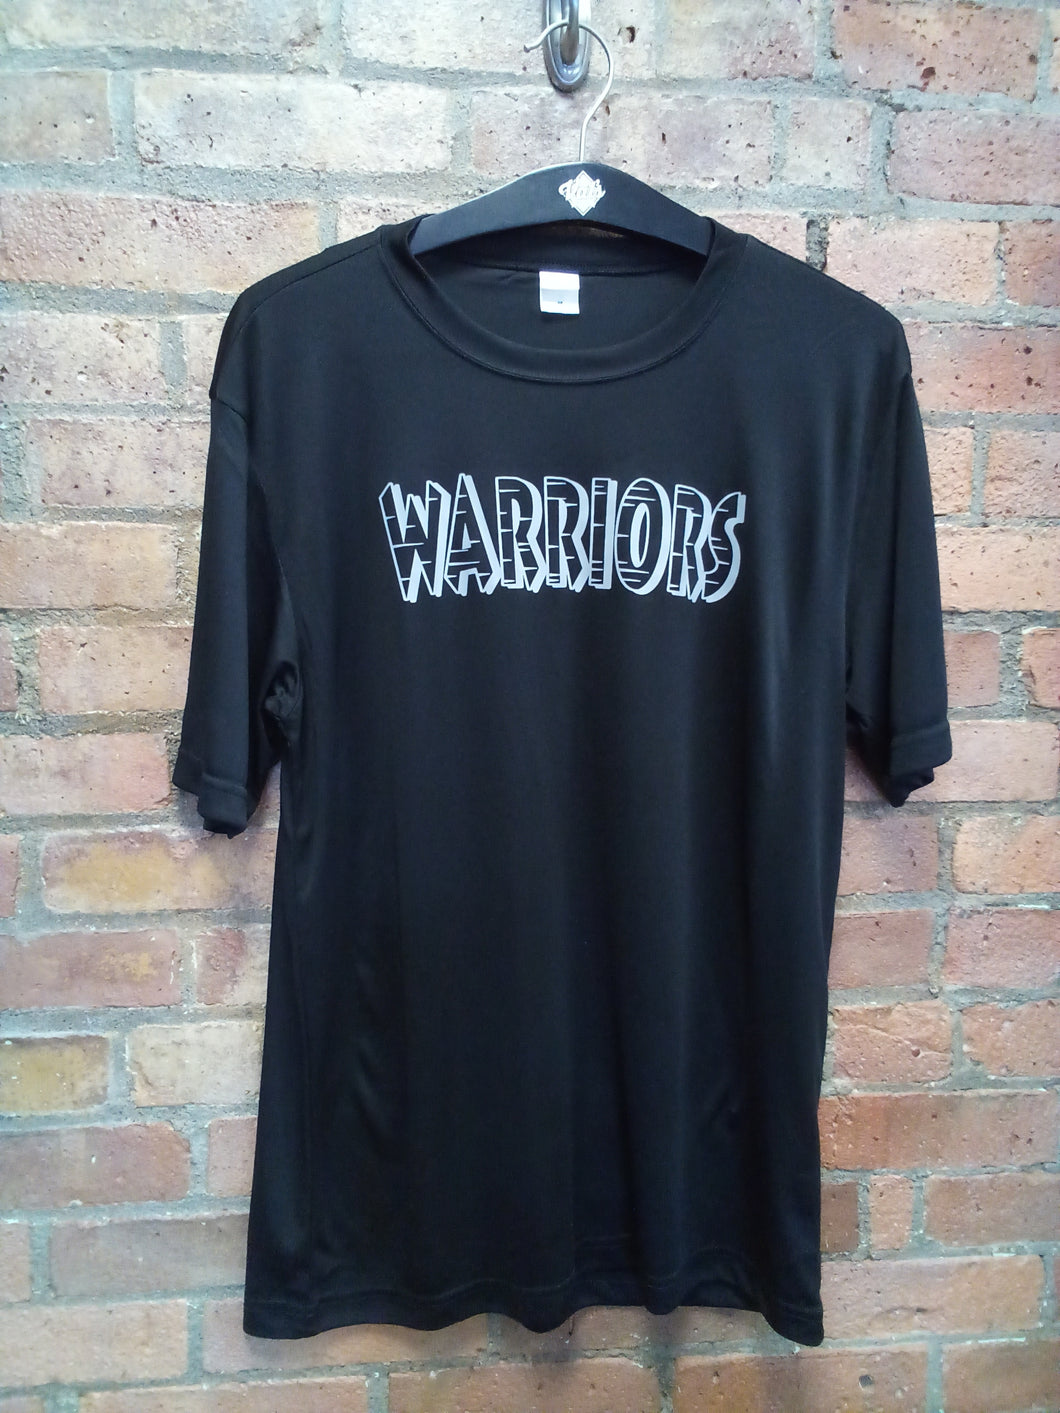 CLEARANCE - Stillwater Warriors Black Moisture Wicking T-Shirt - Size Medium